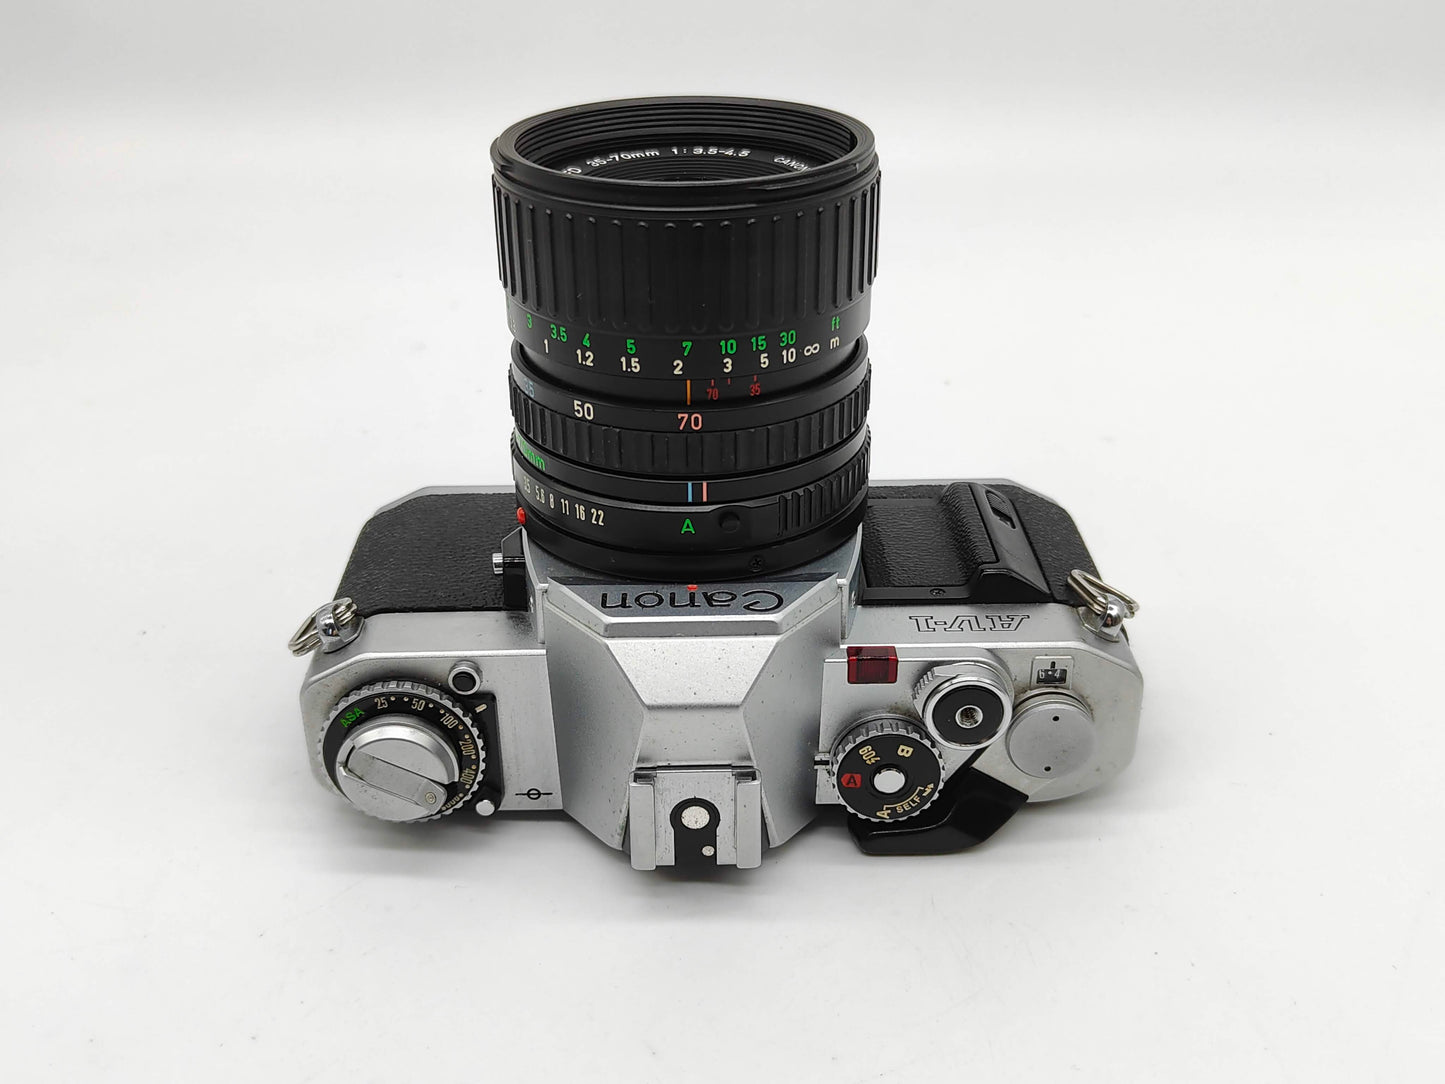 Canon AV-1 SLR camera with 35-70mm zoom lens